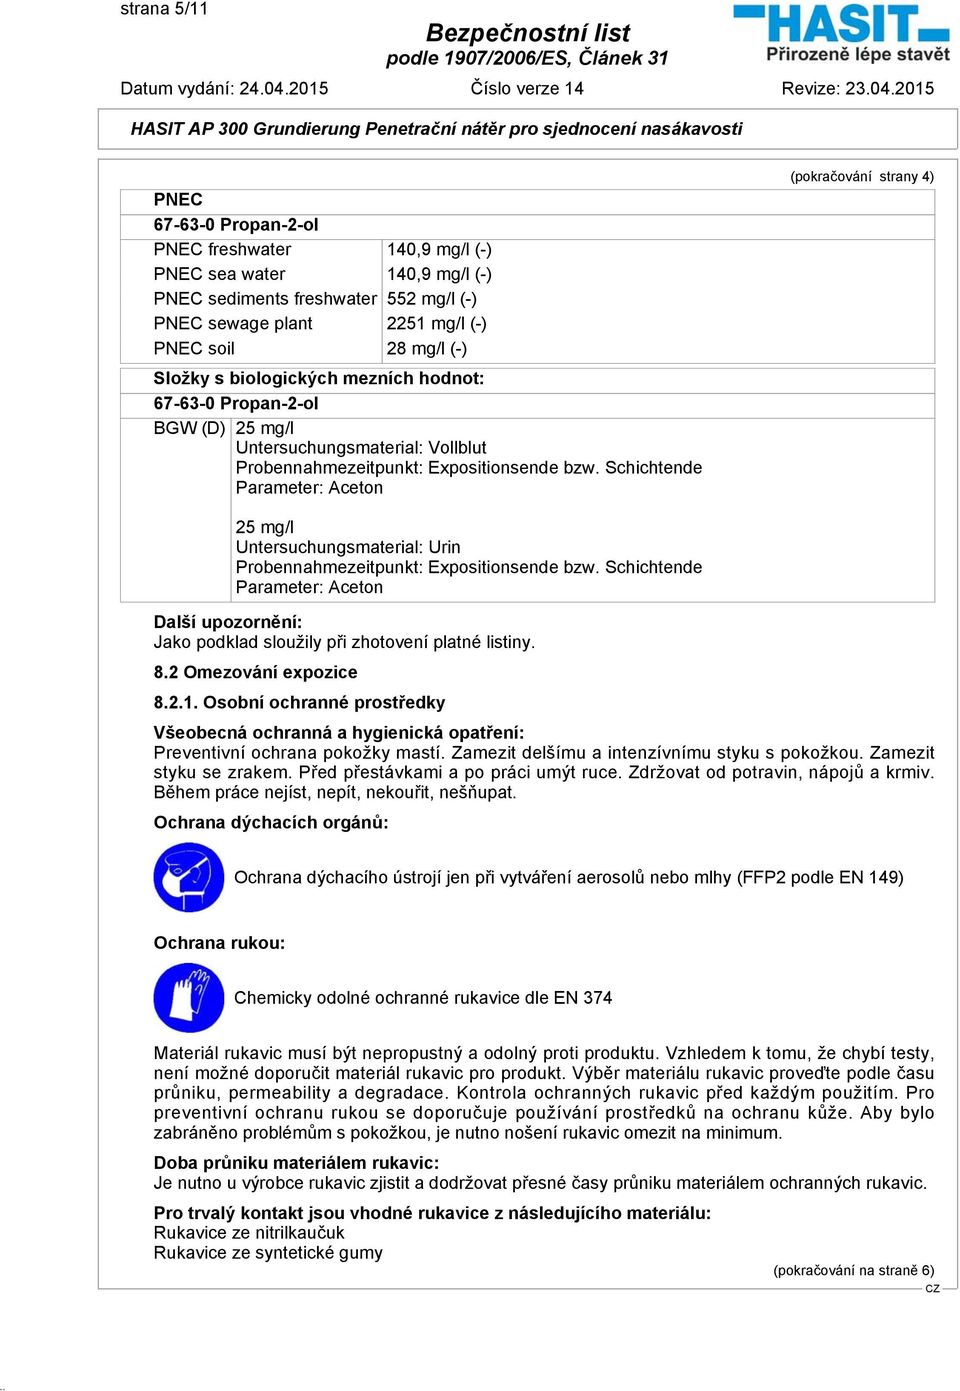 Schichtende Parameter: Aceton (pokračování strany 4) 25 mg/l Untersuchungsmaterial: Urin Probennahmezeitpunkt: Expositionsende bzw.